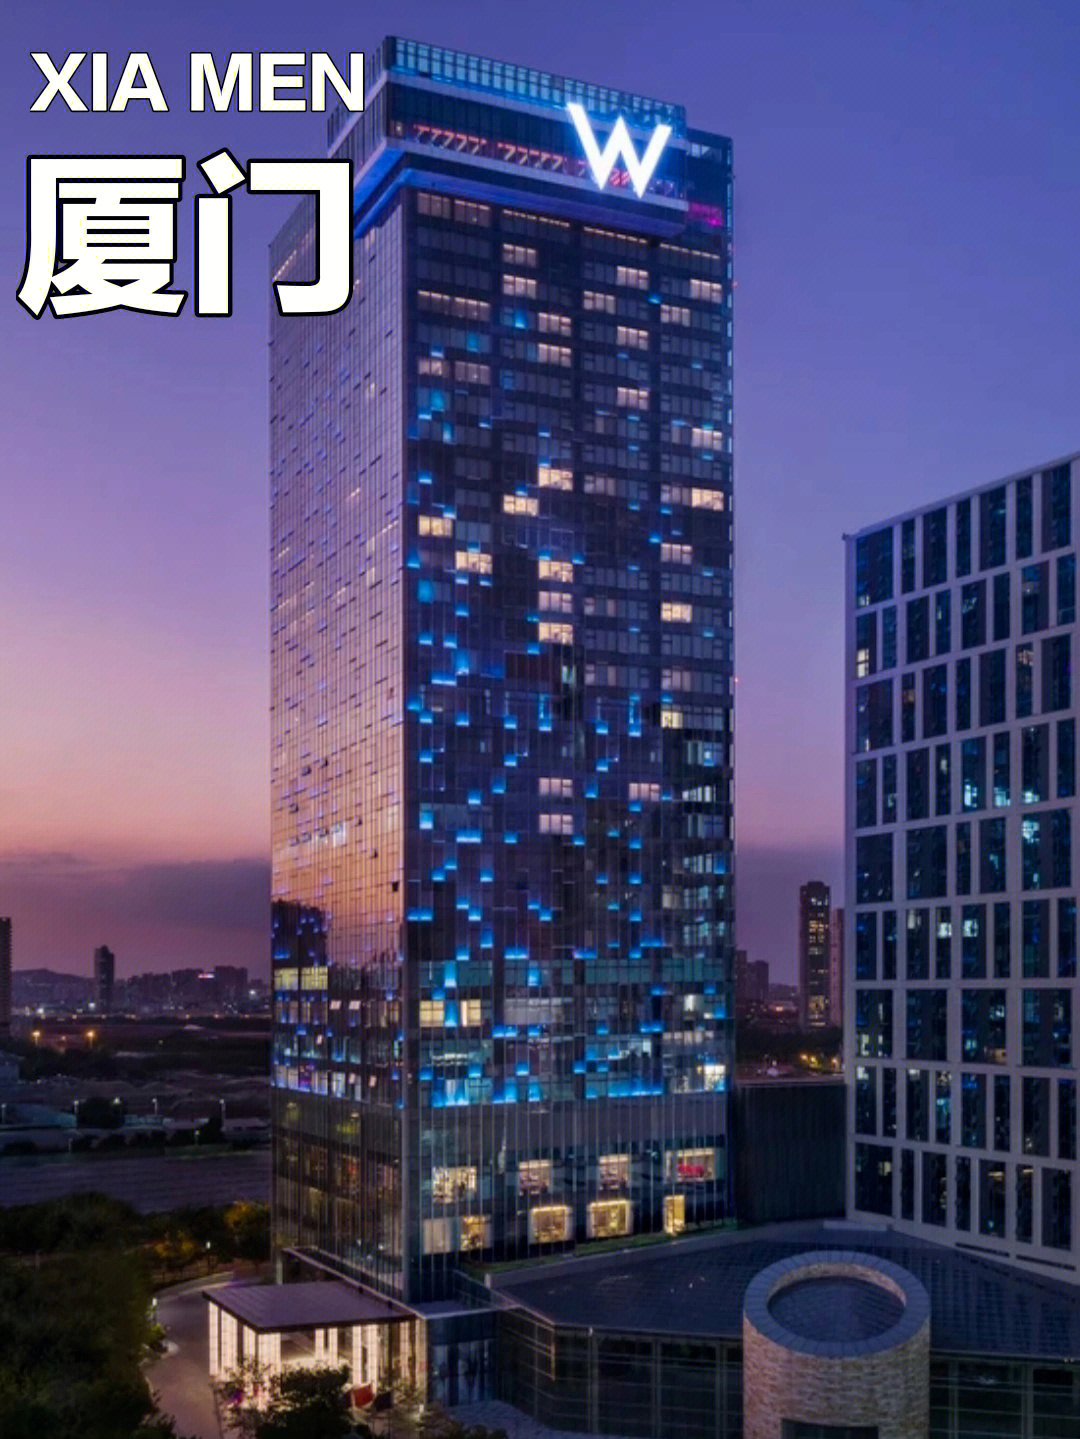 97厦门w酒店位于厦门岛繁华的东部商圈